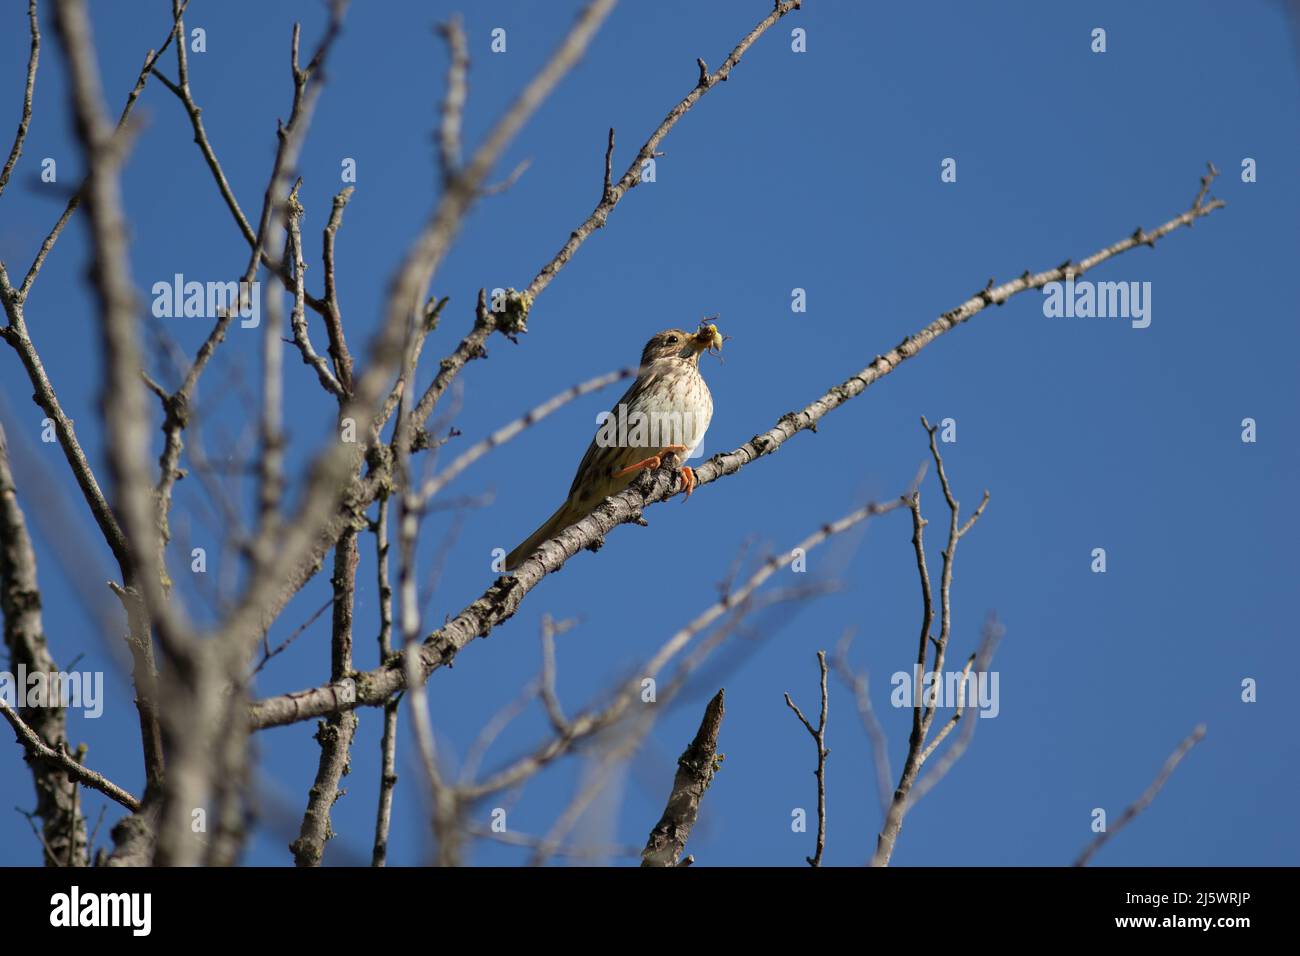 un oiseau avec un insetté dans le bec sur un arbre Foto Stock